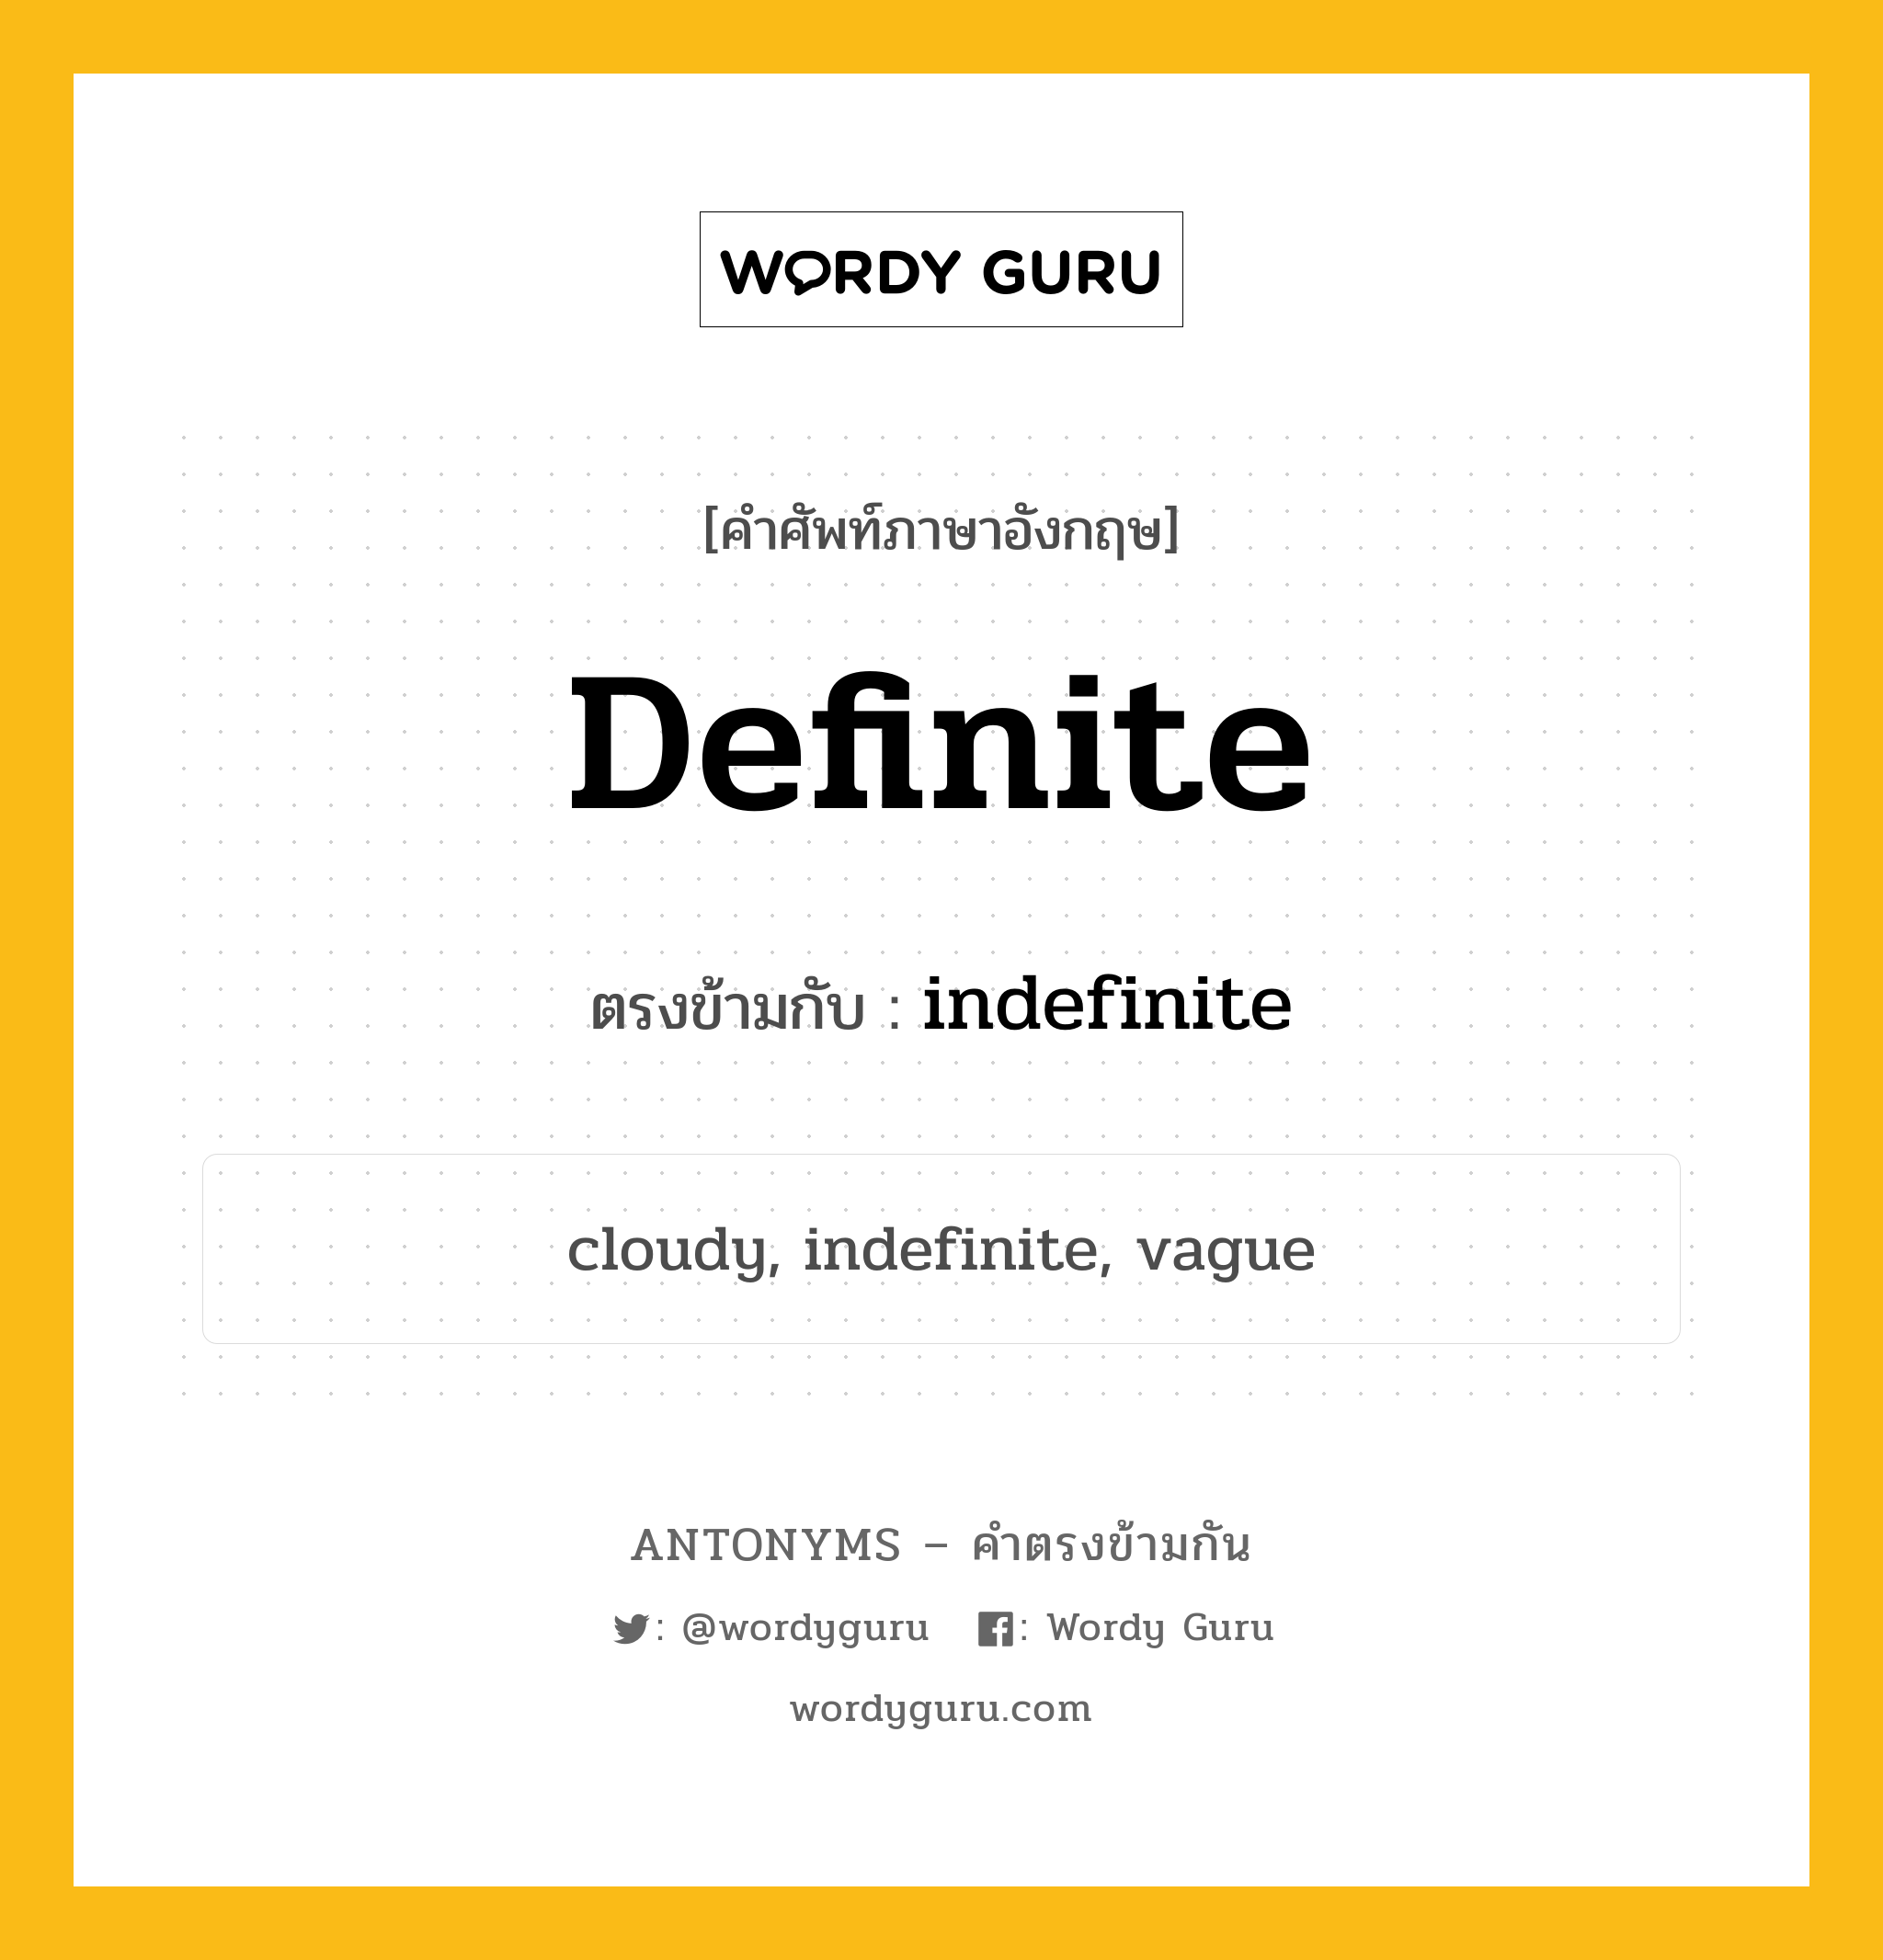 definite เป็นคำตรงข้ามกับคำไหนบ้าง?, คำศัพท์ภาษาอังกฤษ definite ตรงข้ามกับ indefinite หมวด indefinite